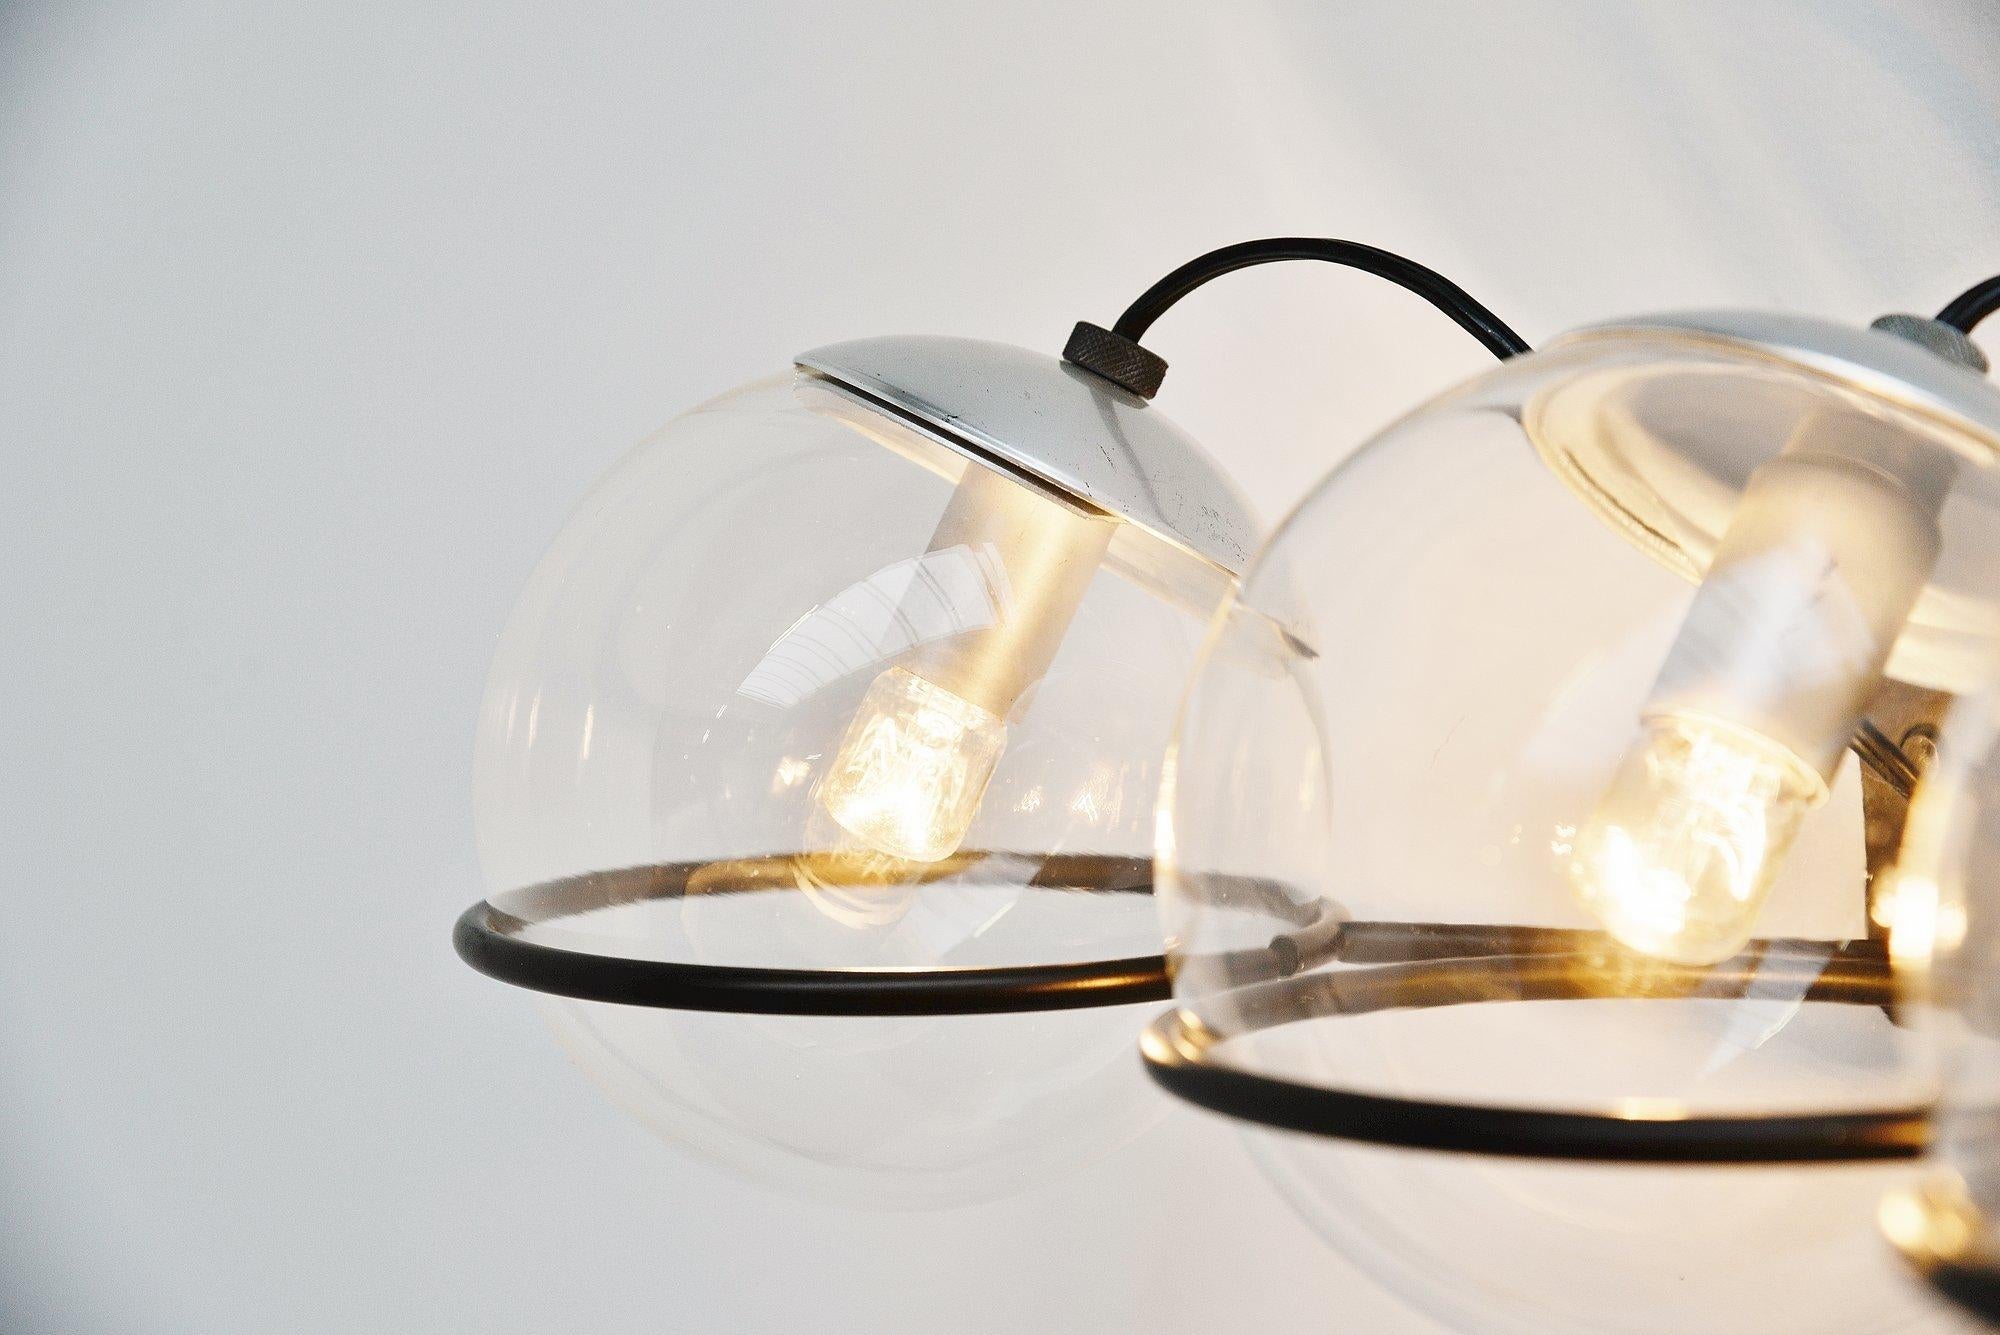 Paar Wandlampen Modell 237/3, entworfen von Gino Sarfatti, hergestellt von Arteluce, Italien 1959. Dieses Paar Wandlampen ist ein ikonisches und berühmtes Design von Sarfatti. Von diesem Modell gibt es viele verschiedene Versionen und Ausgaben. Dies